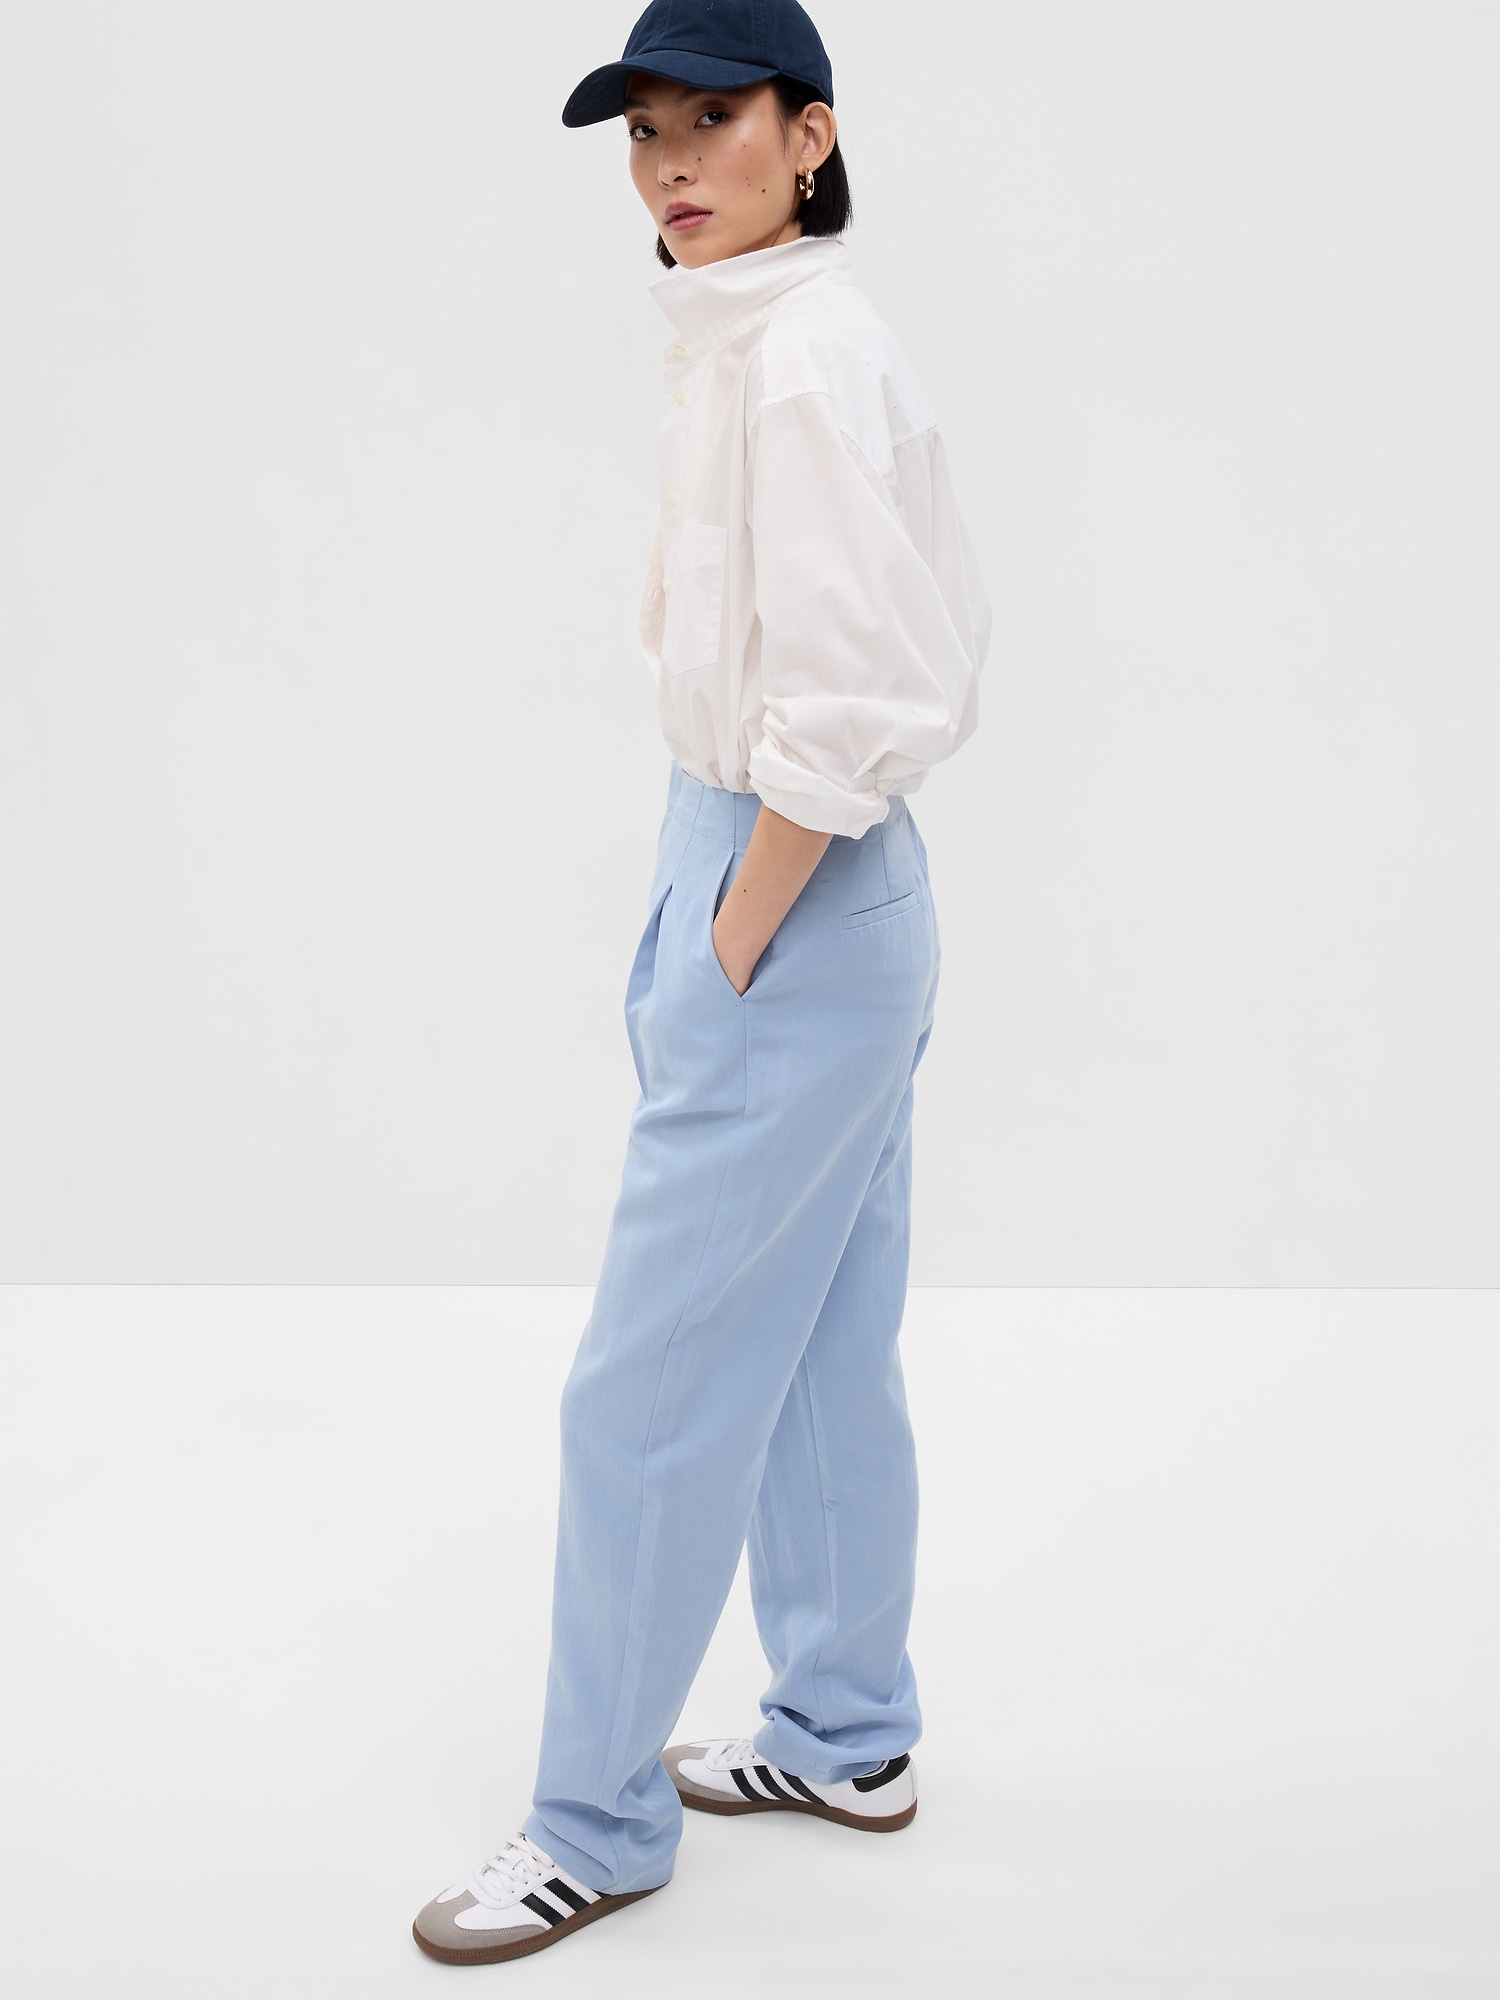 SoftSuit Trousers in TENCEL™ Lyocell | Gap